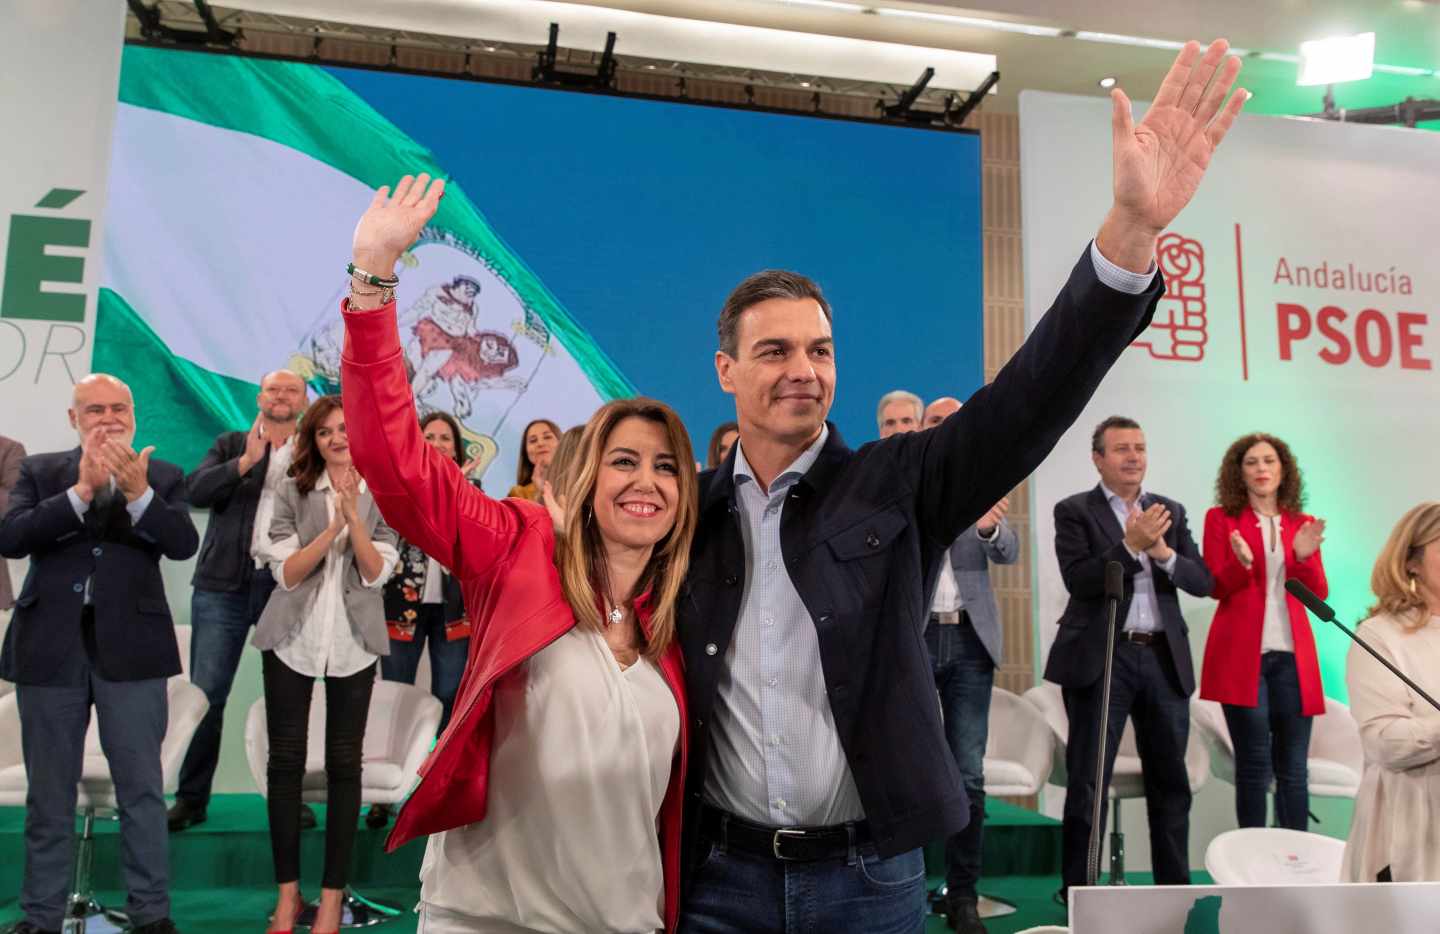 La presidenta andaluza, Susana Díaz, y el presidente del Gobierno, Pedro Sánchez, saludan al inicio de la reunión del comité director del PSOE-A hoy en Sevilla, donde Díaz será nombrada candidata a las elecciones andaluzas.